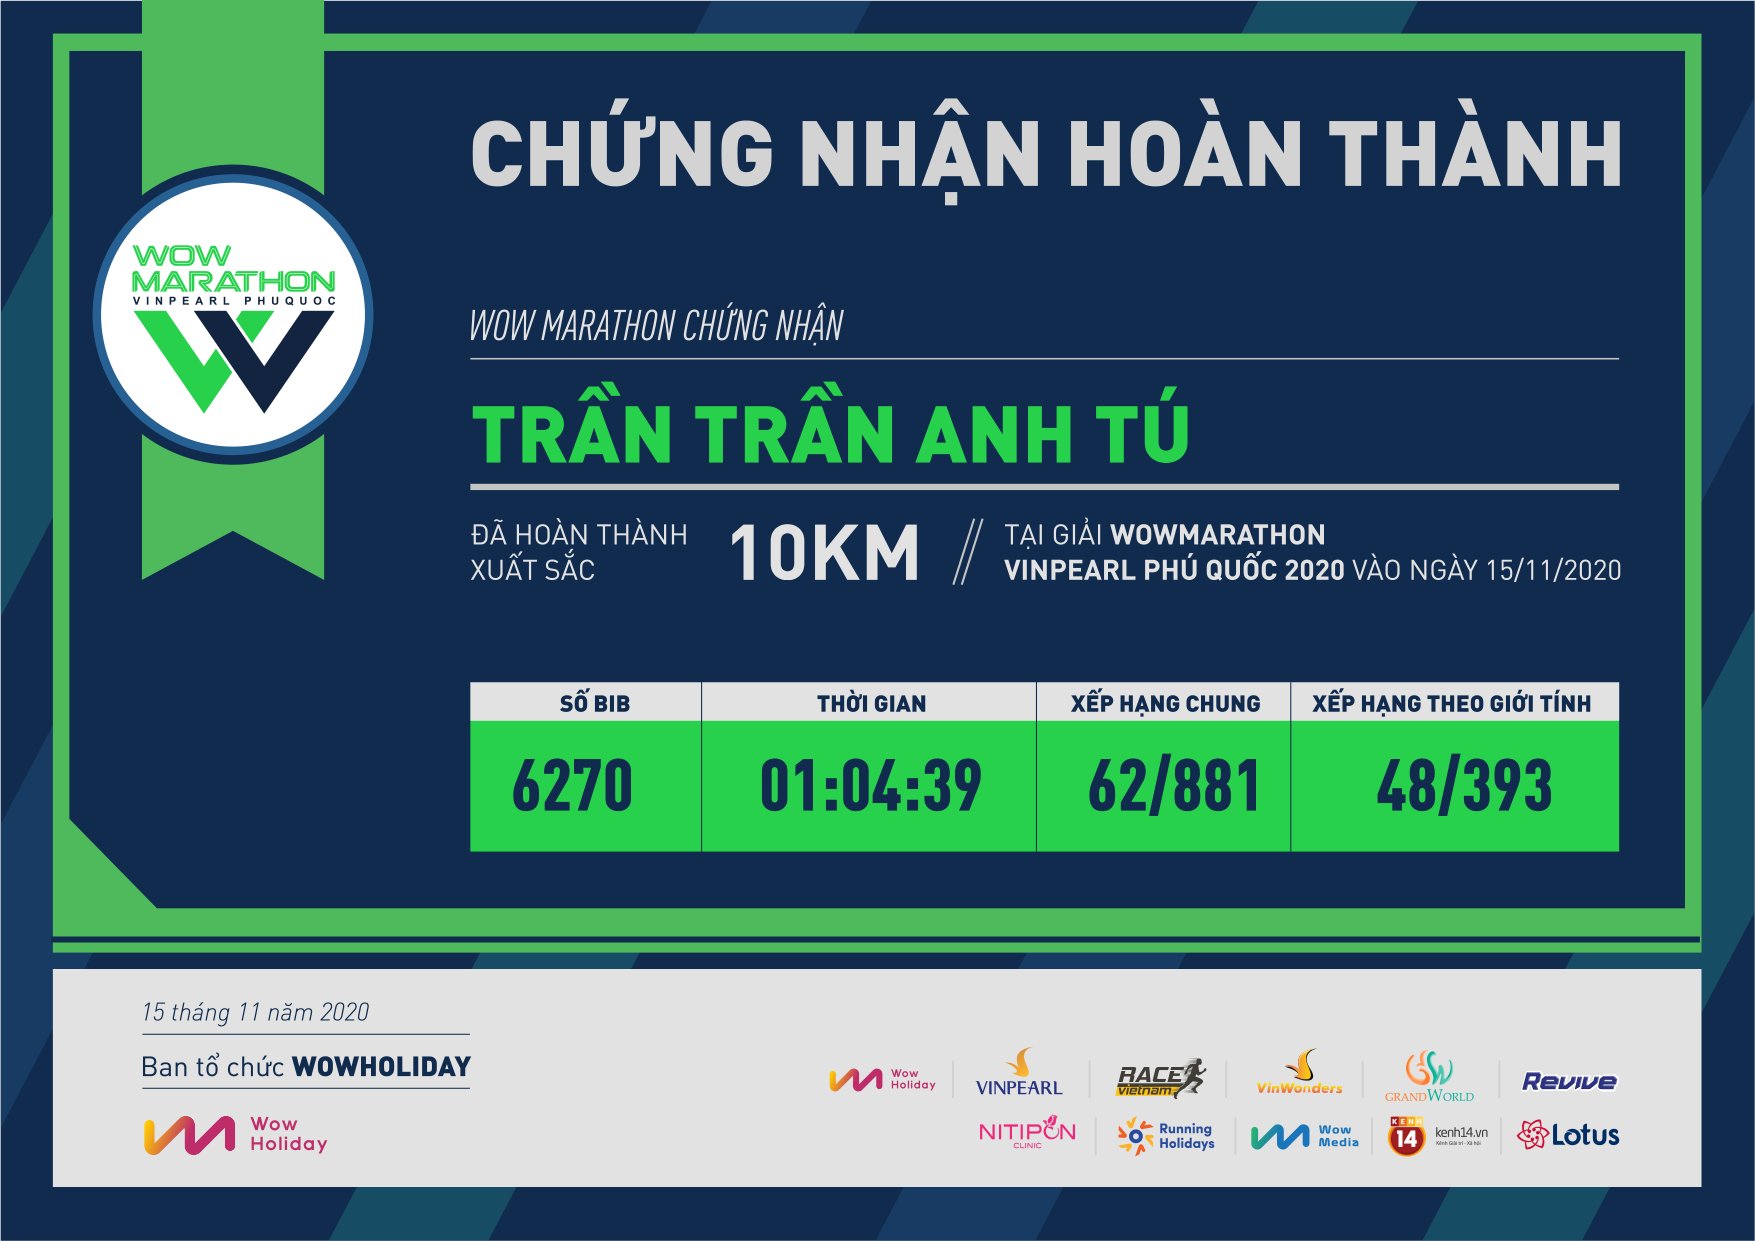 6270 - Trần Trần Anh Tú